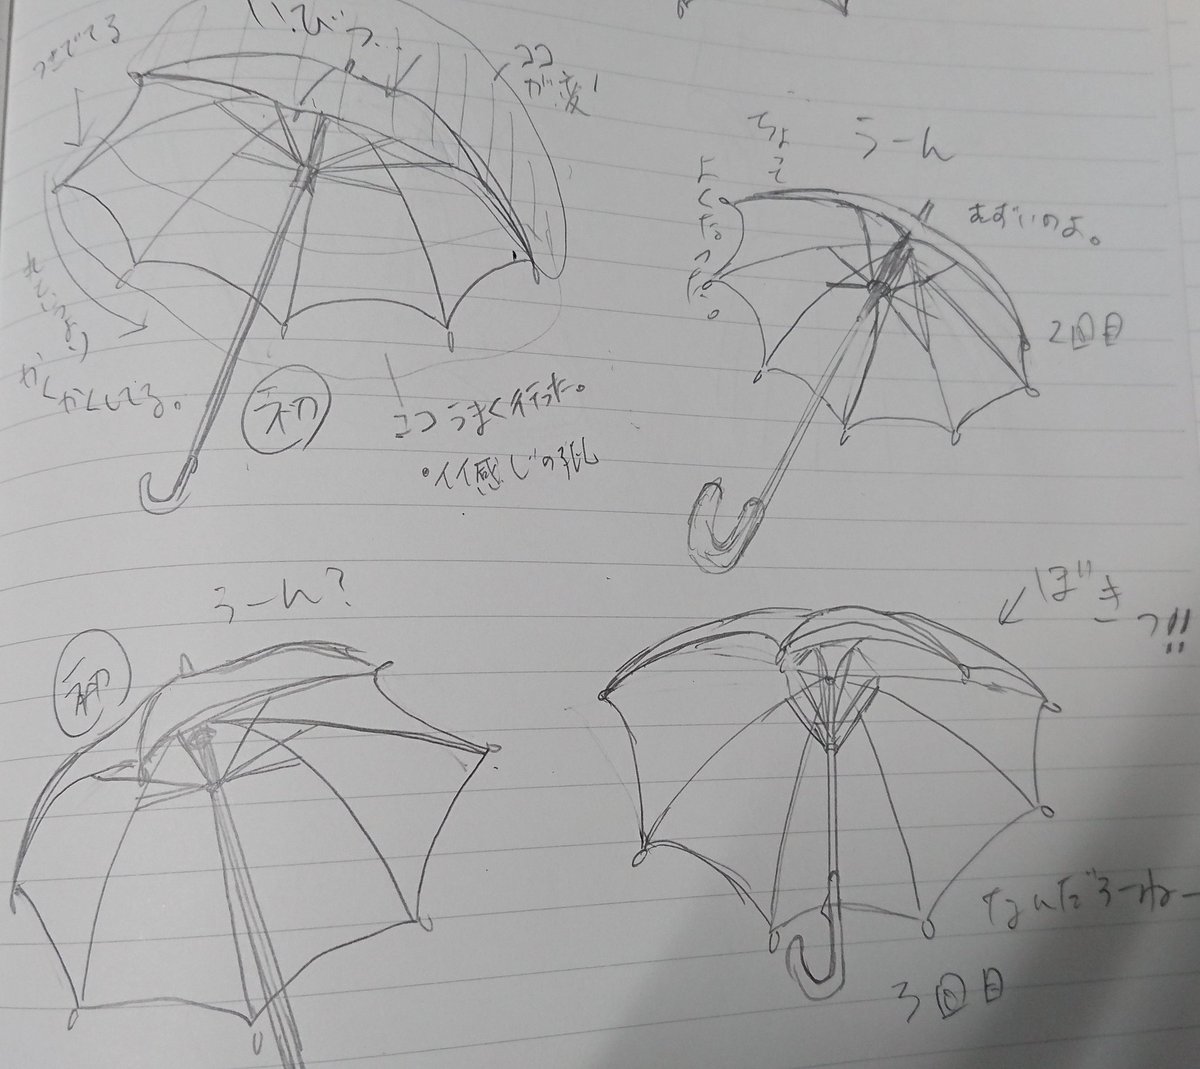 今日のお昼のらくがきー
ミコちゃんと傘の練習。全然しっくりこないのよさー 